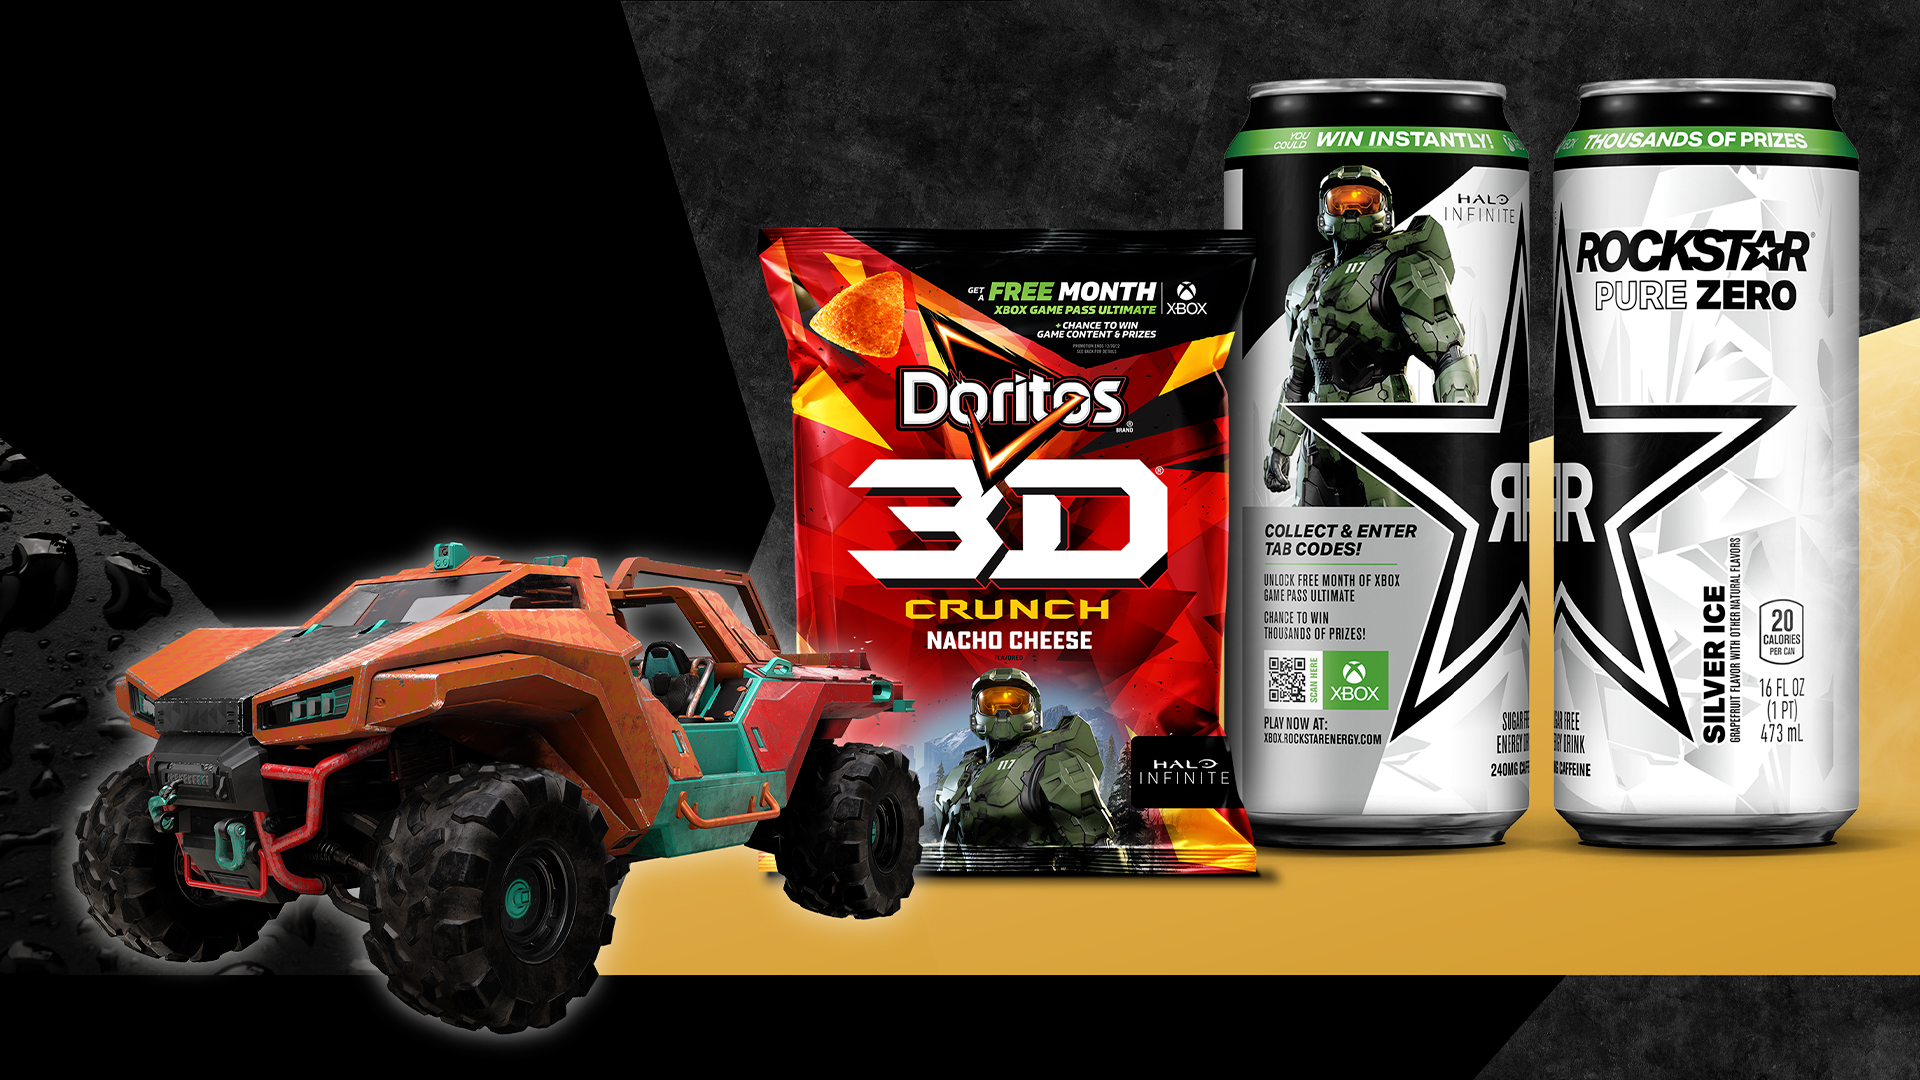 Rockstar and Doritos partnership with Halo and Razorback coating